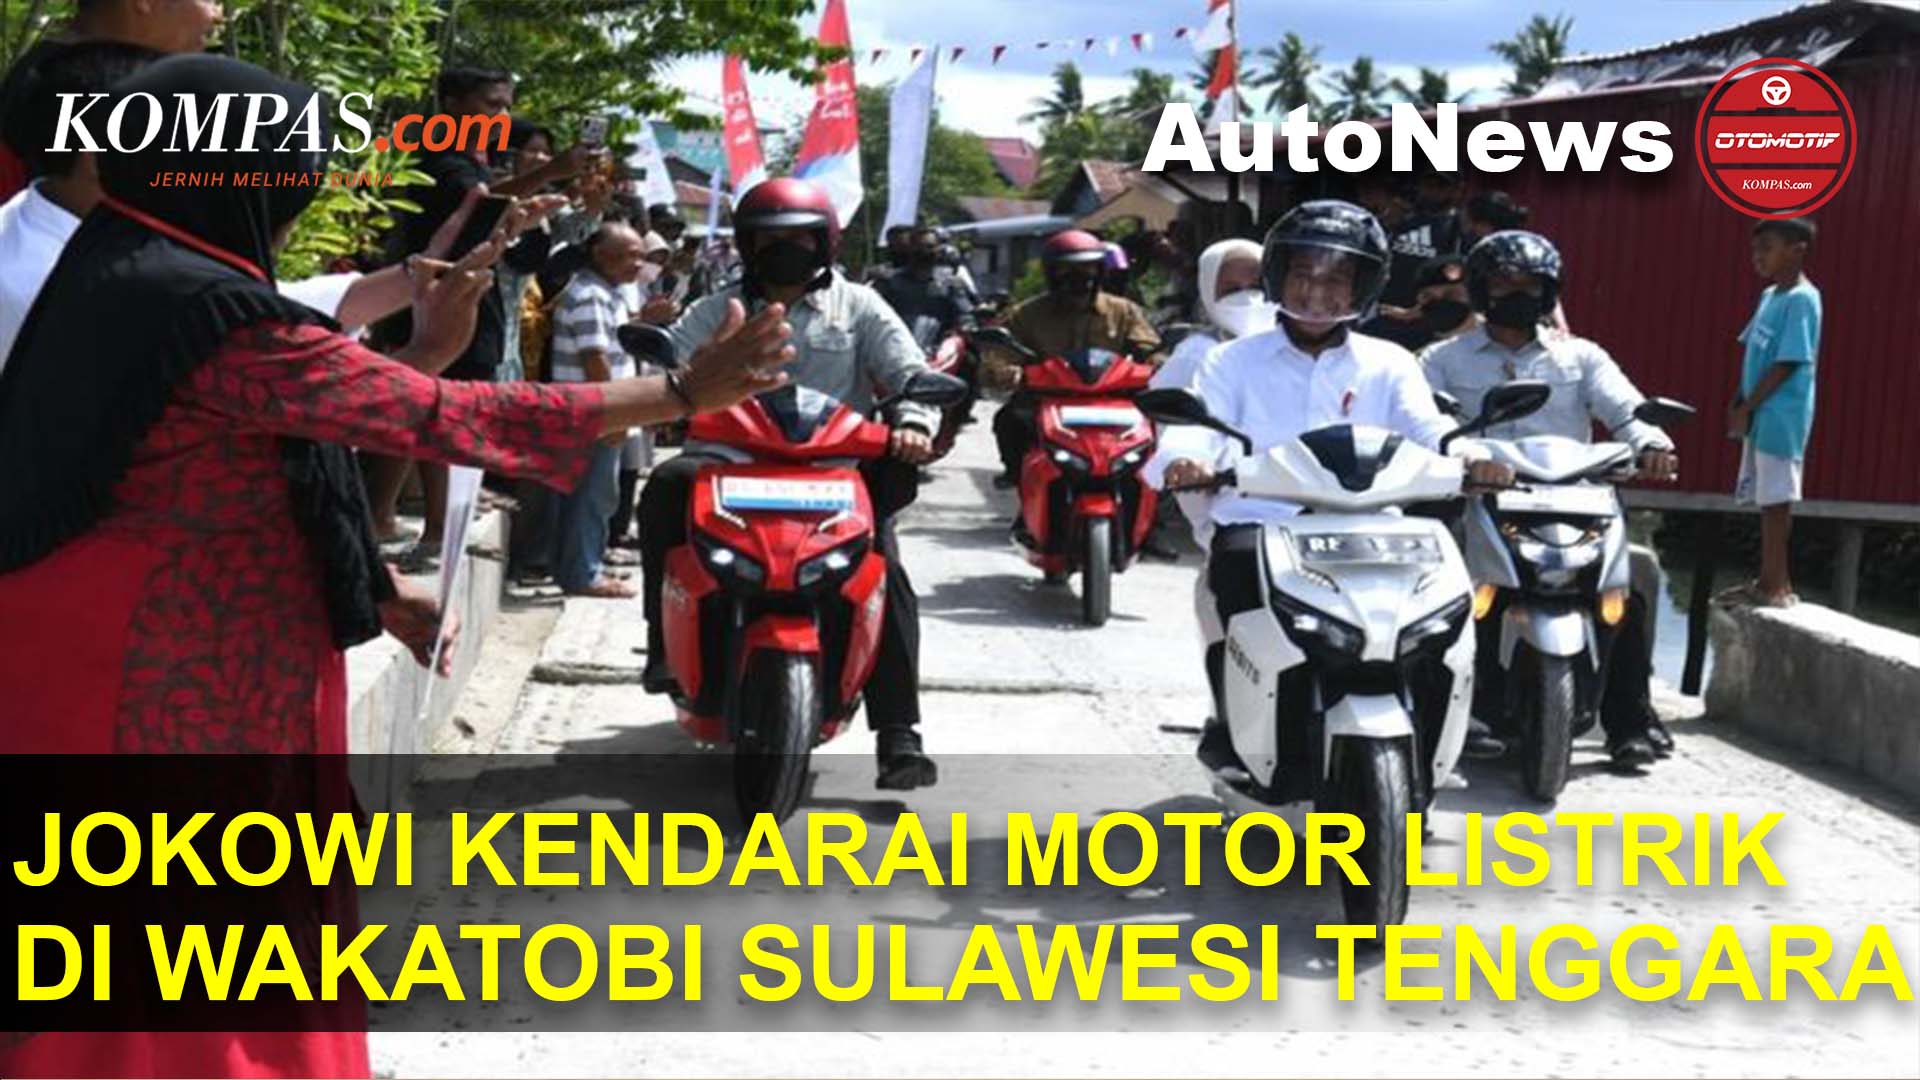 Ini Motor Listrik Yang Dipakai Presiden Jokowi di Wakatobi Sulawesi Tenggara